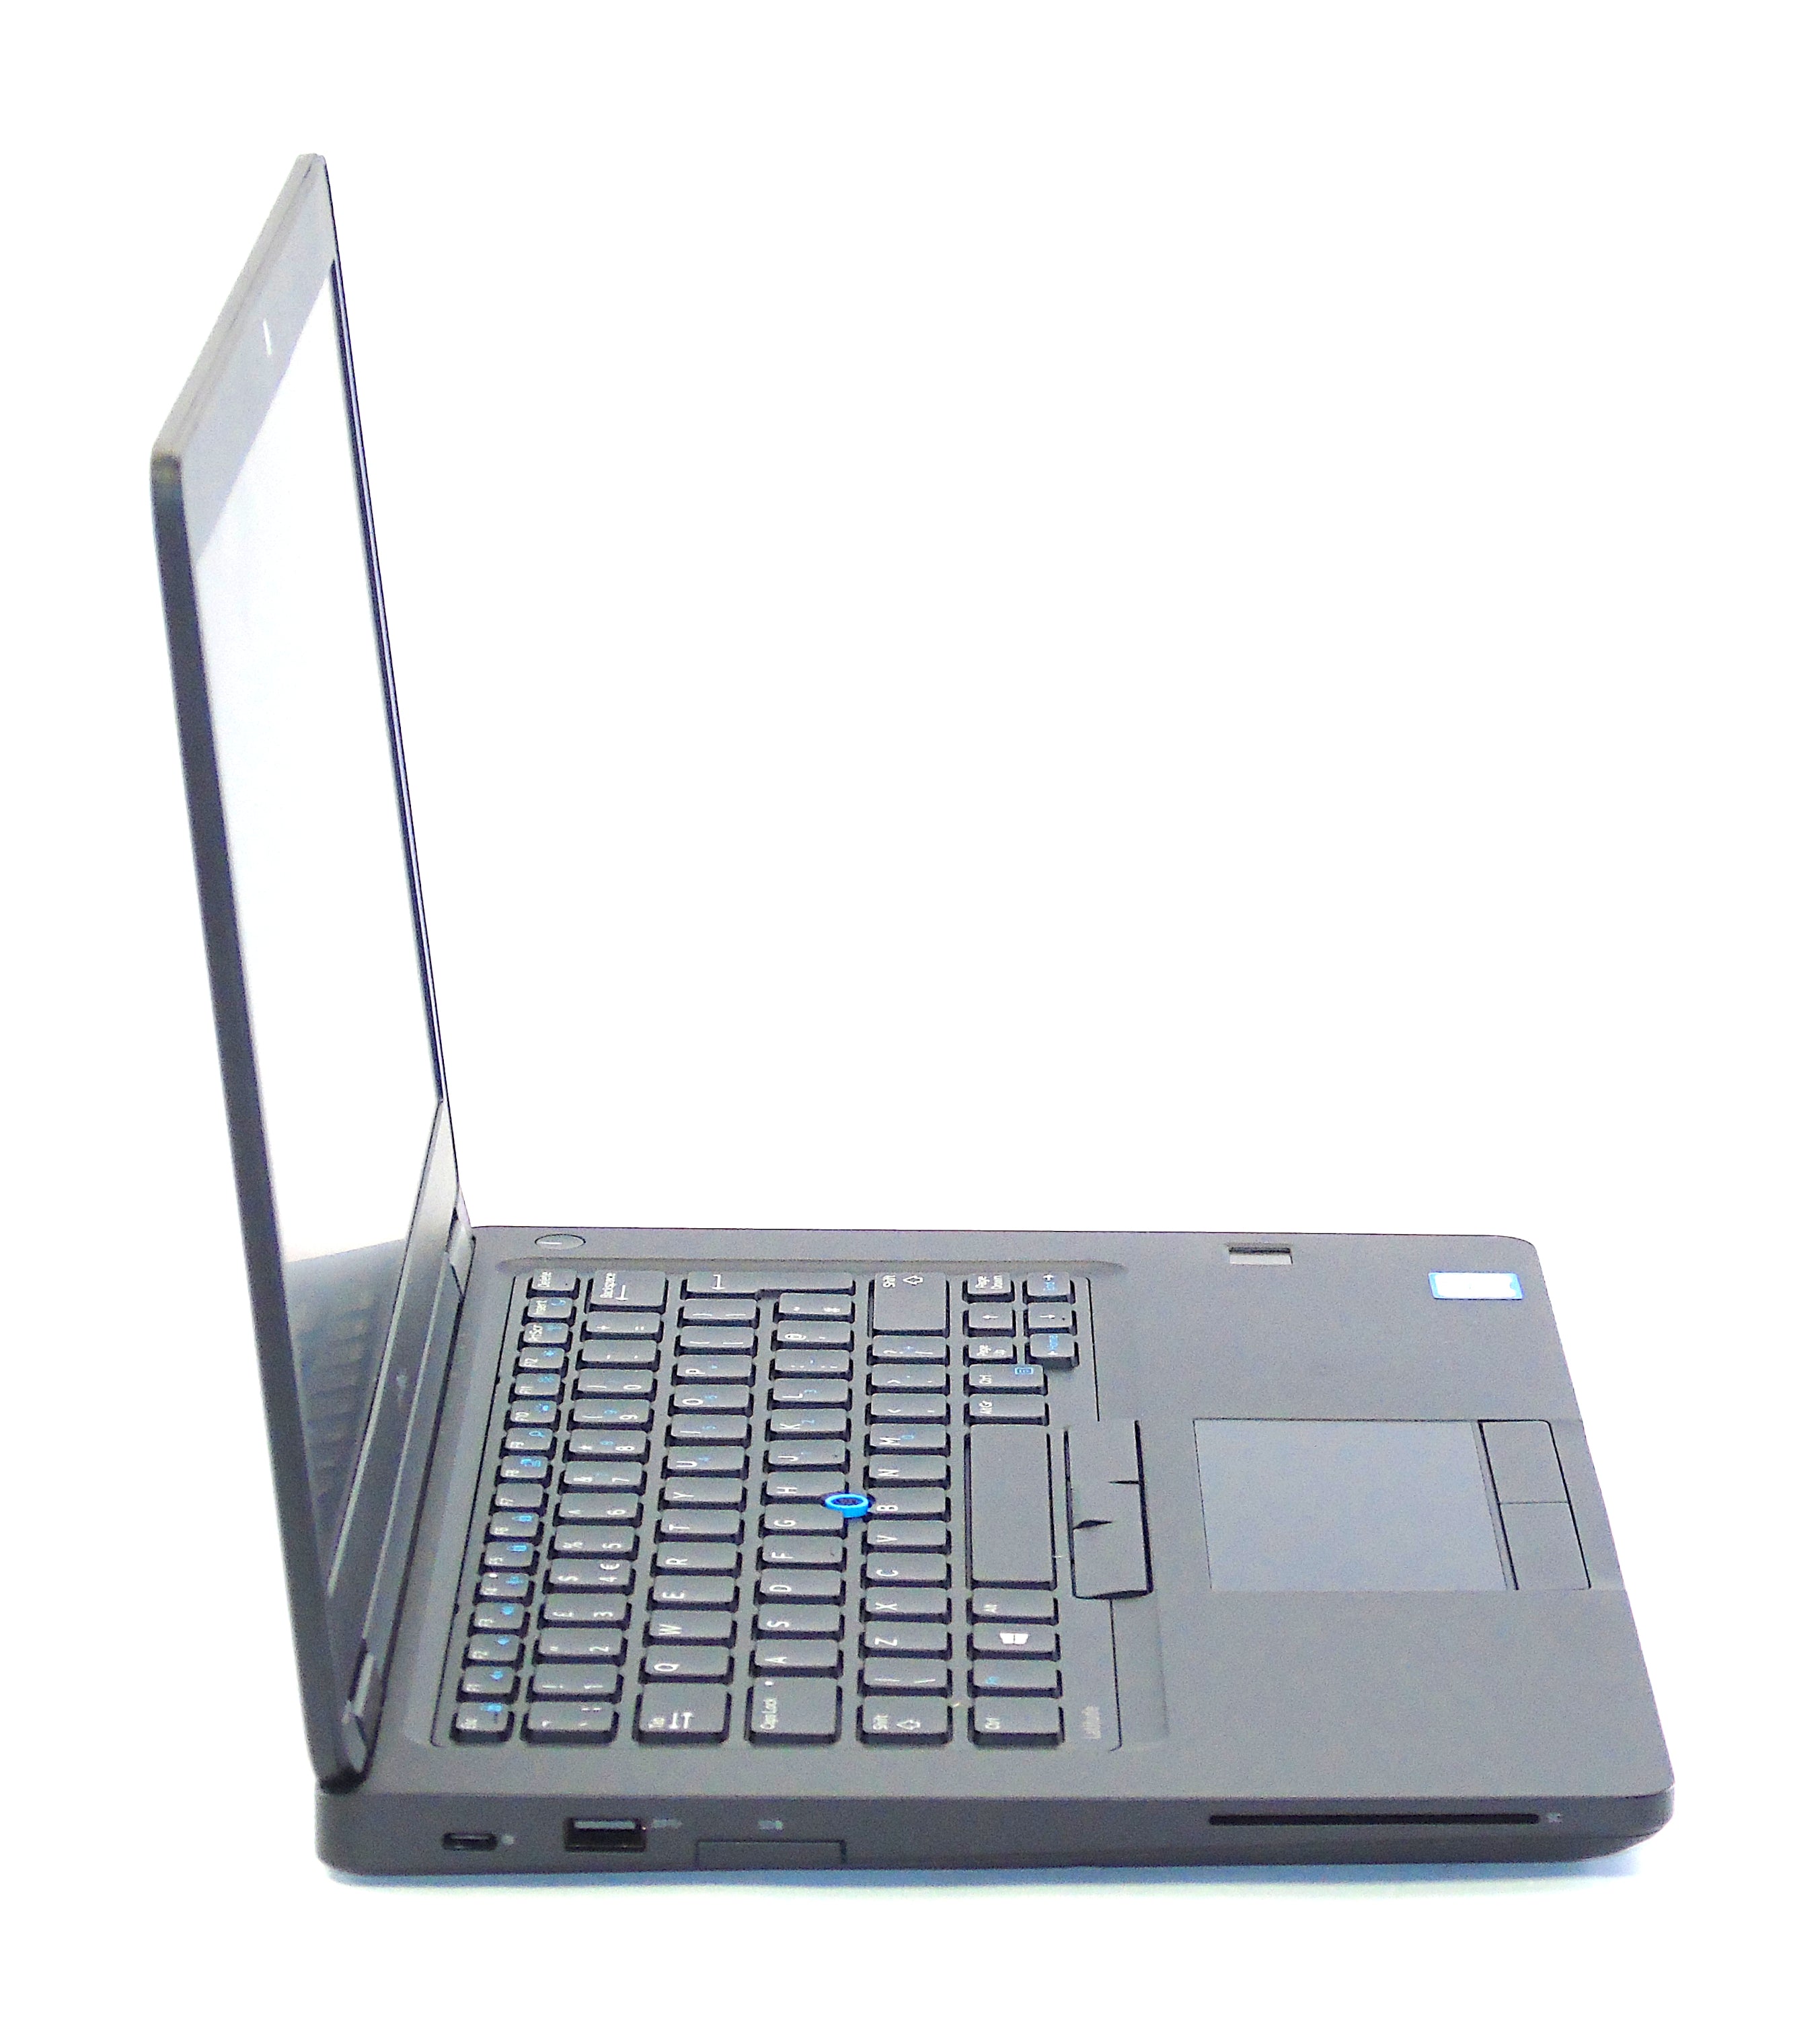 Dell Latitude 5480 Laptop, 14" Core i7 6th Gen, 8GB RAM, 256GB SSD